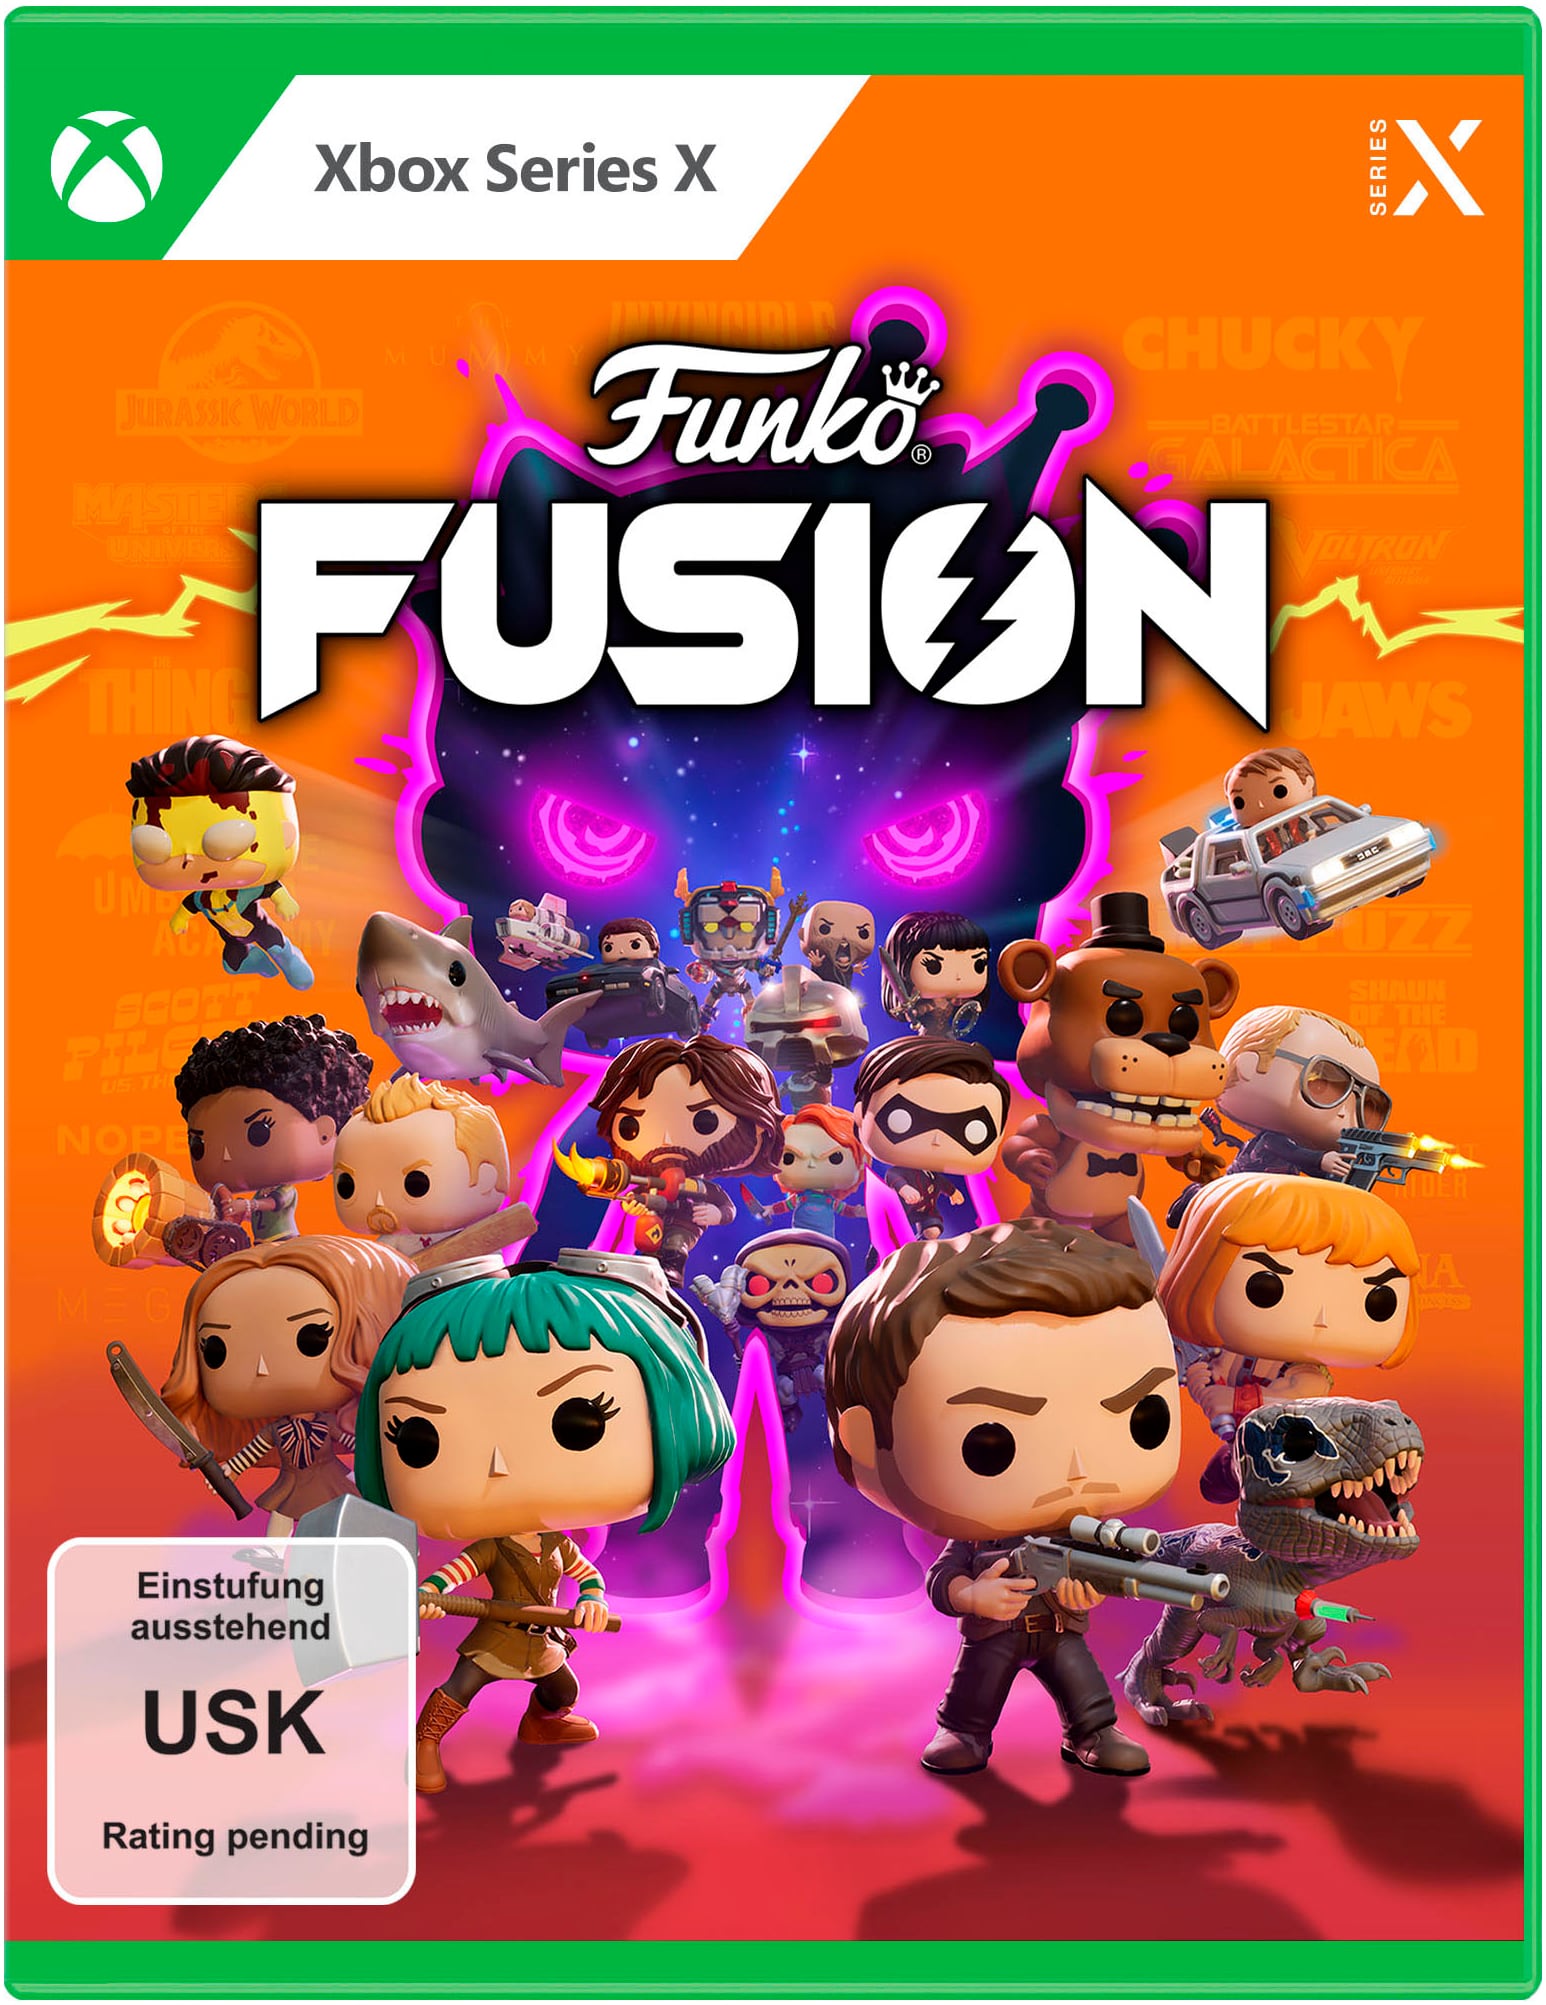 Spielesoftware »Funko Fusion«, Xbox Series X